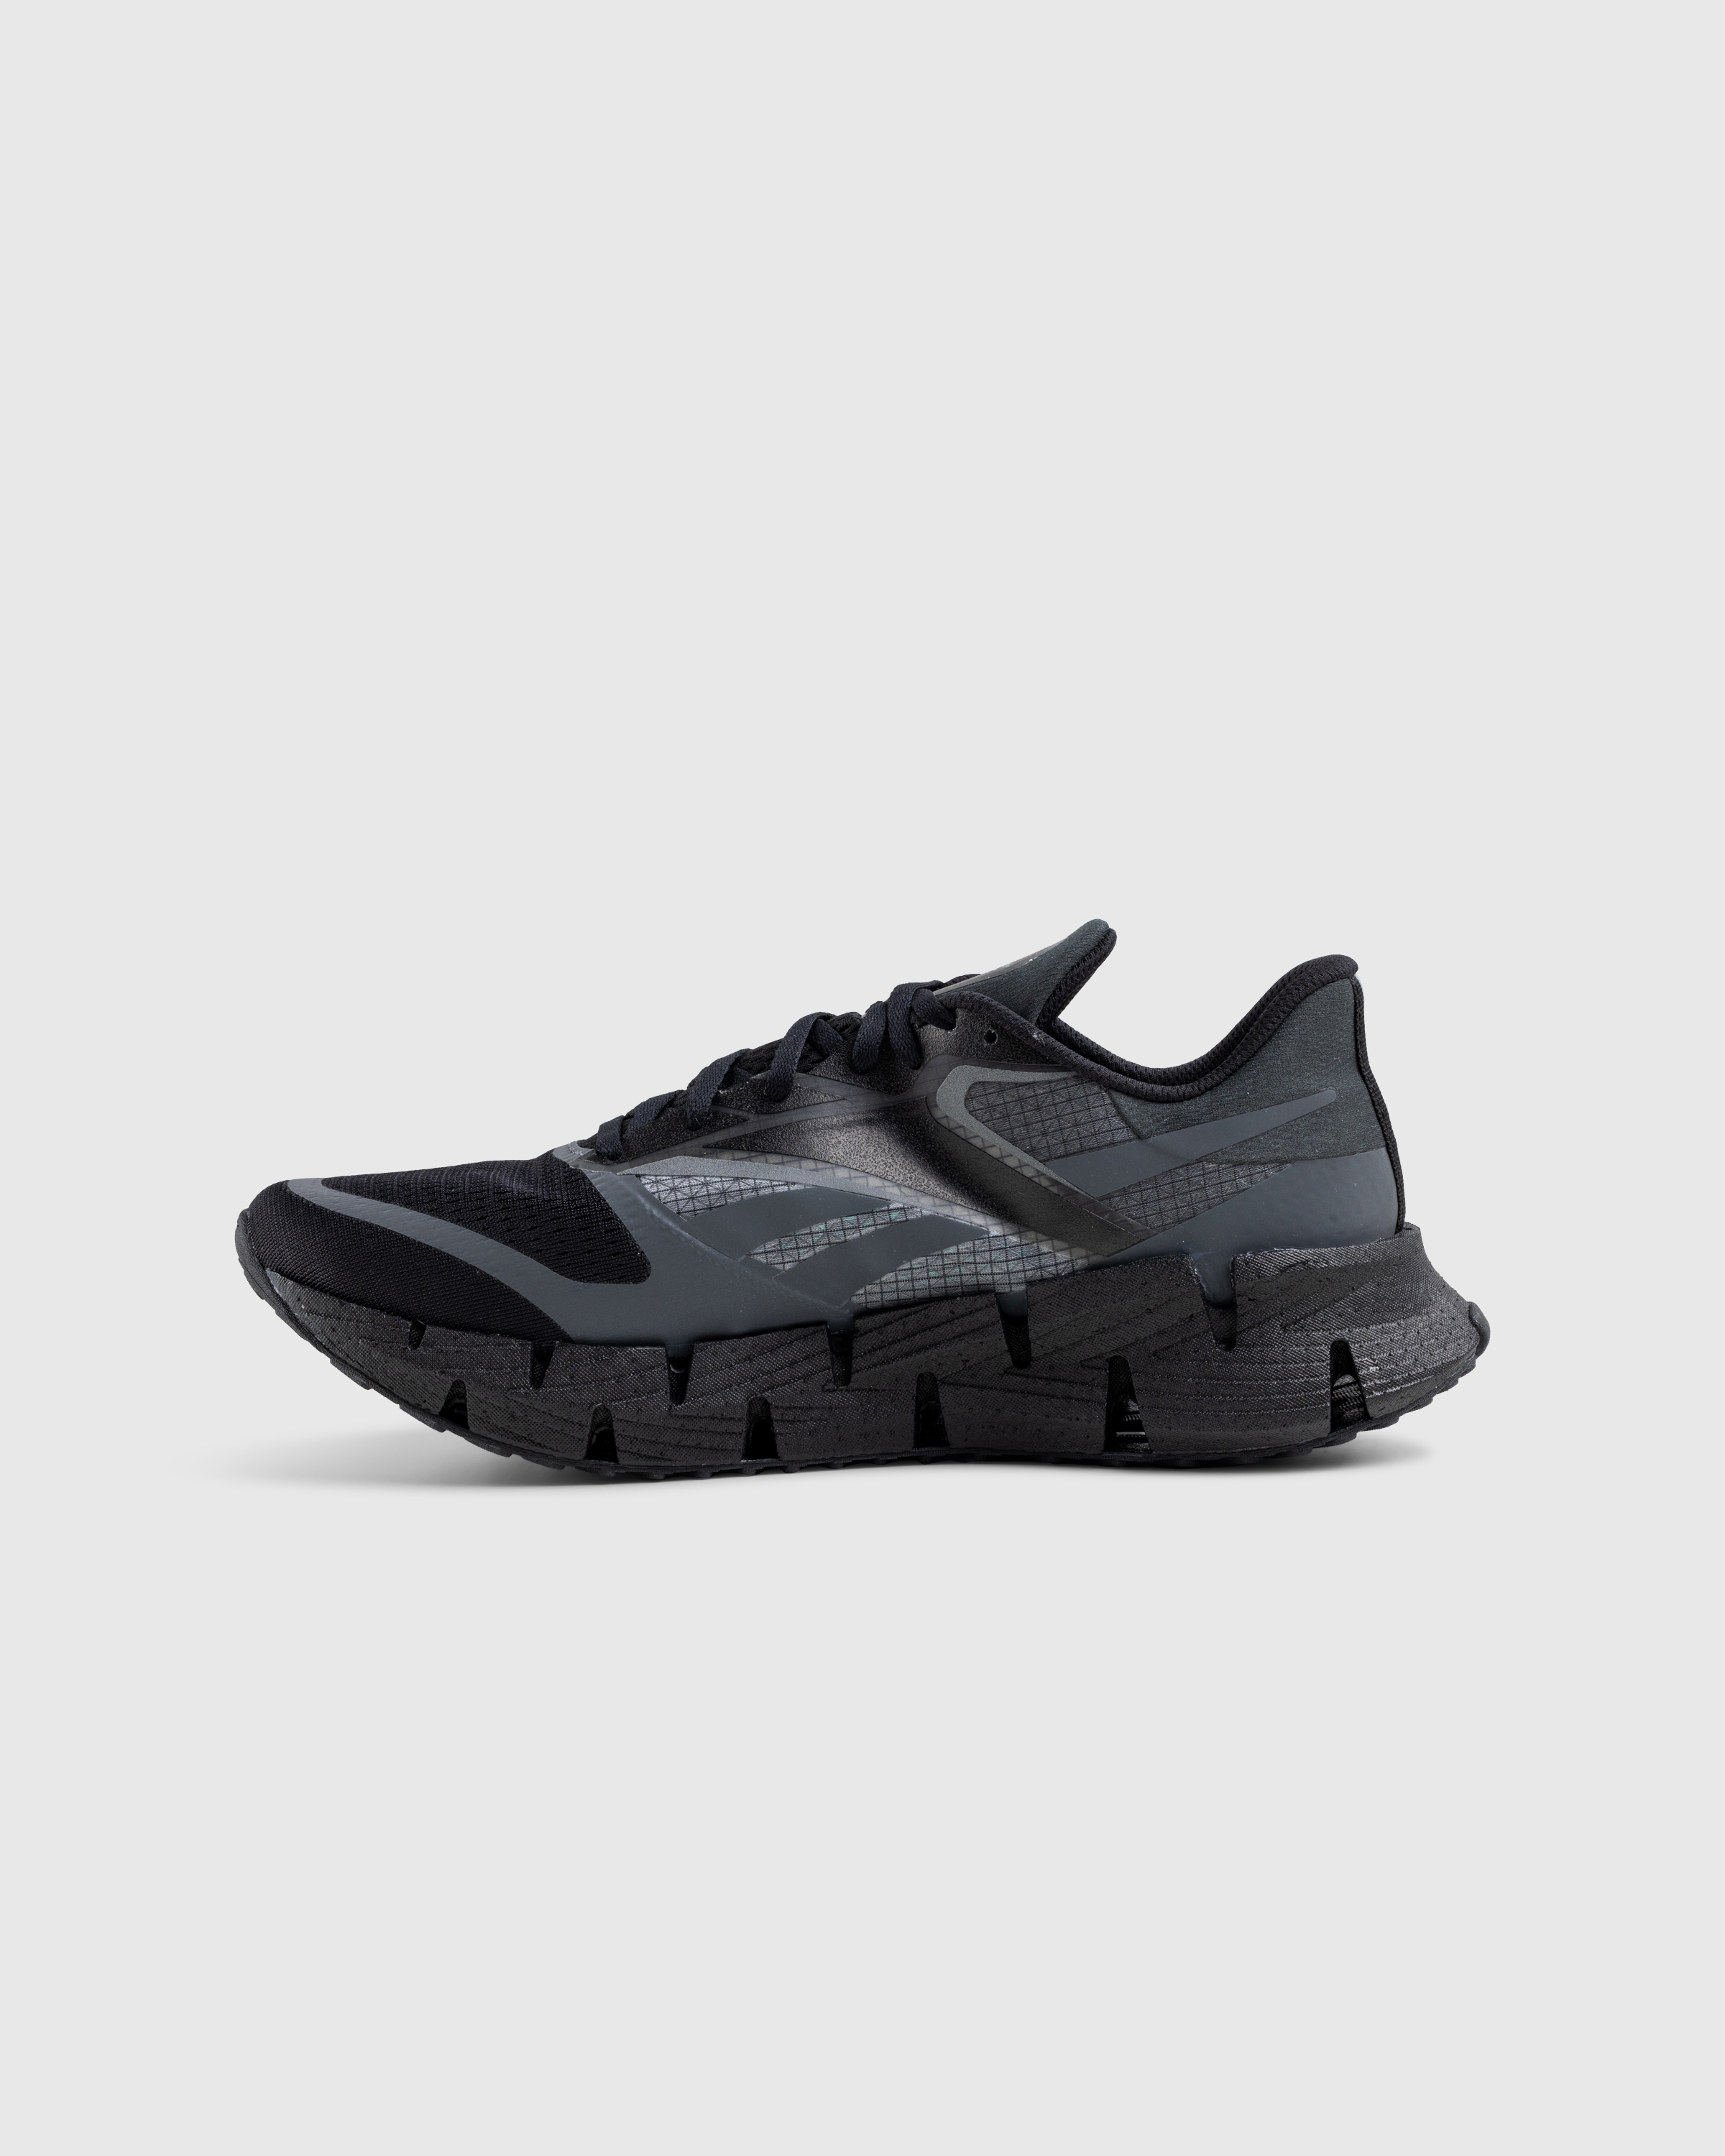 Reebok – FloatZig Black - Low Top Sneakers - Black - Image 2